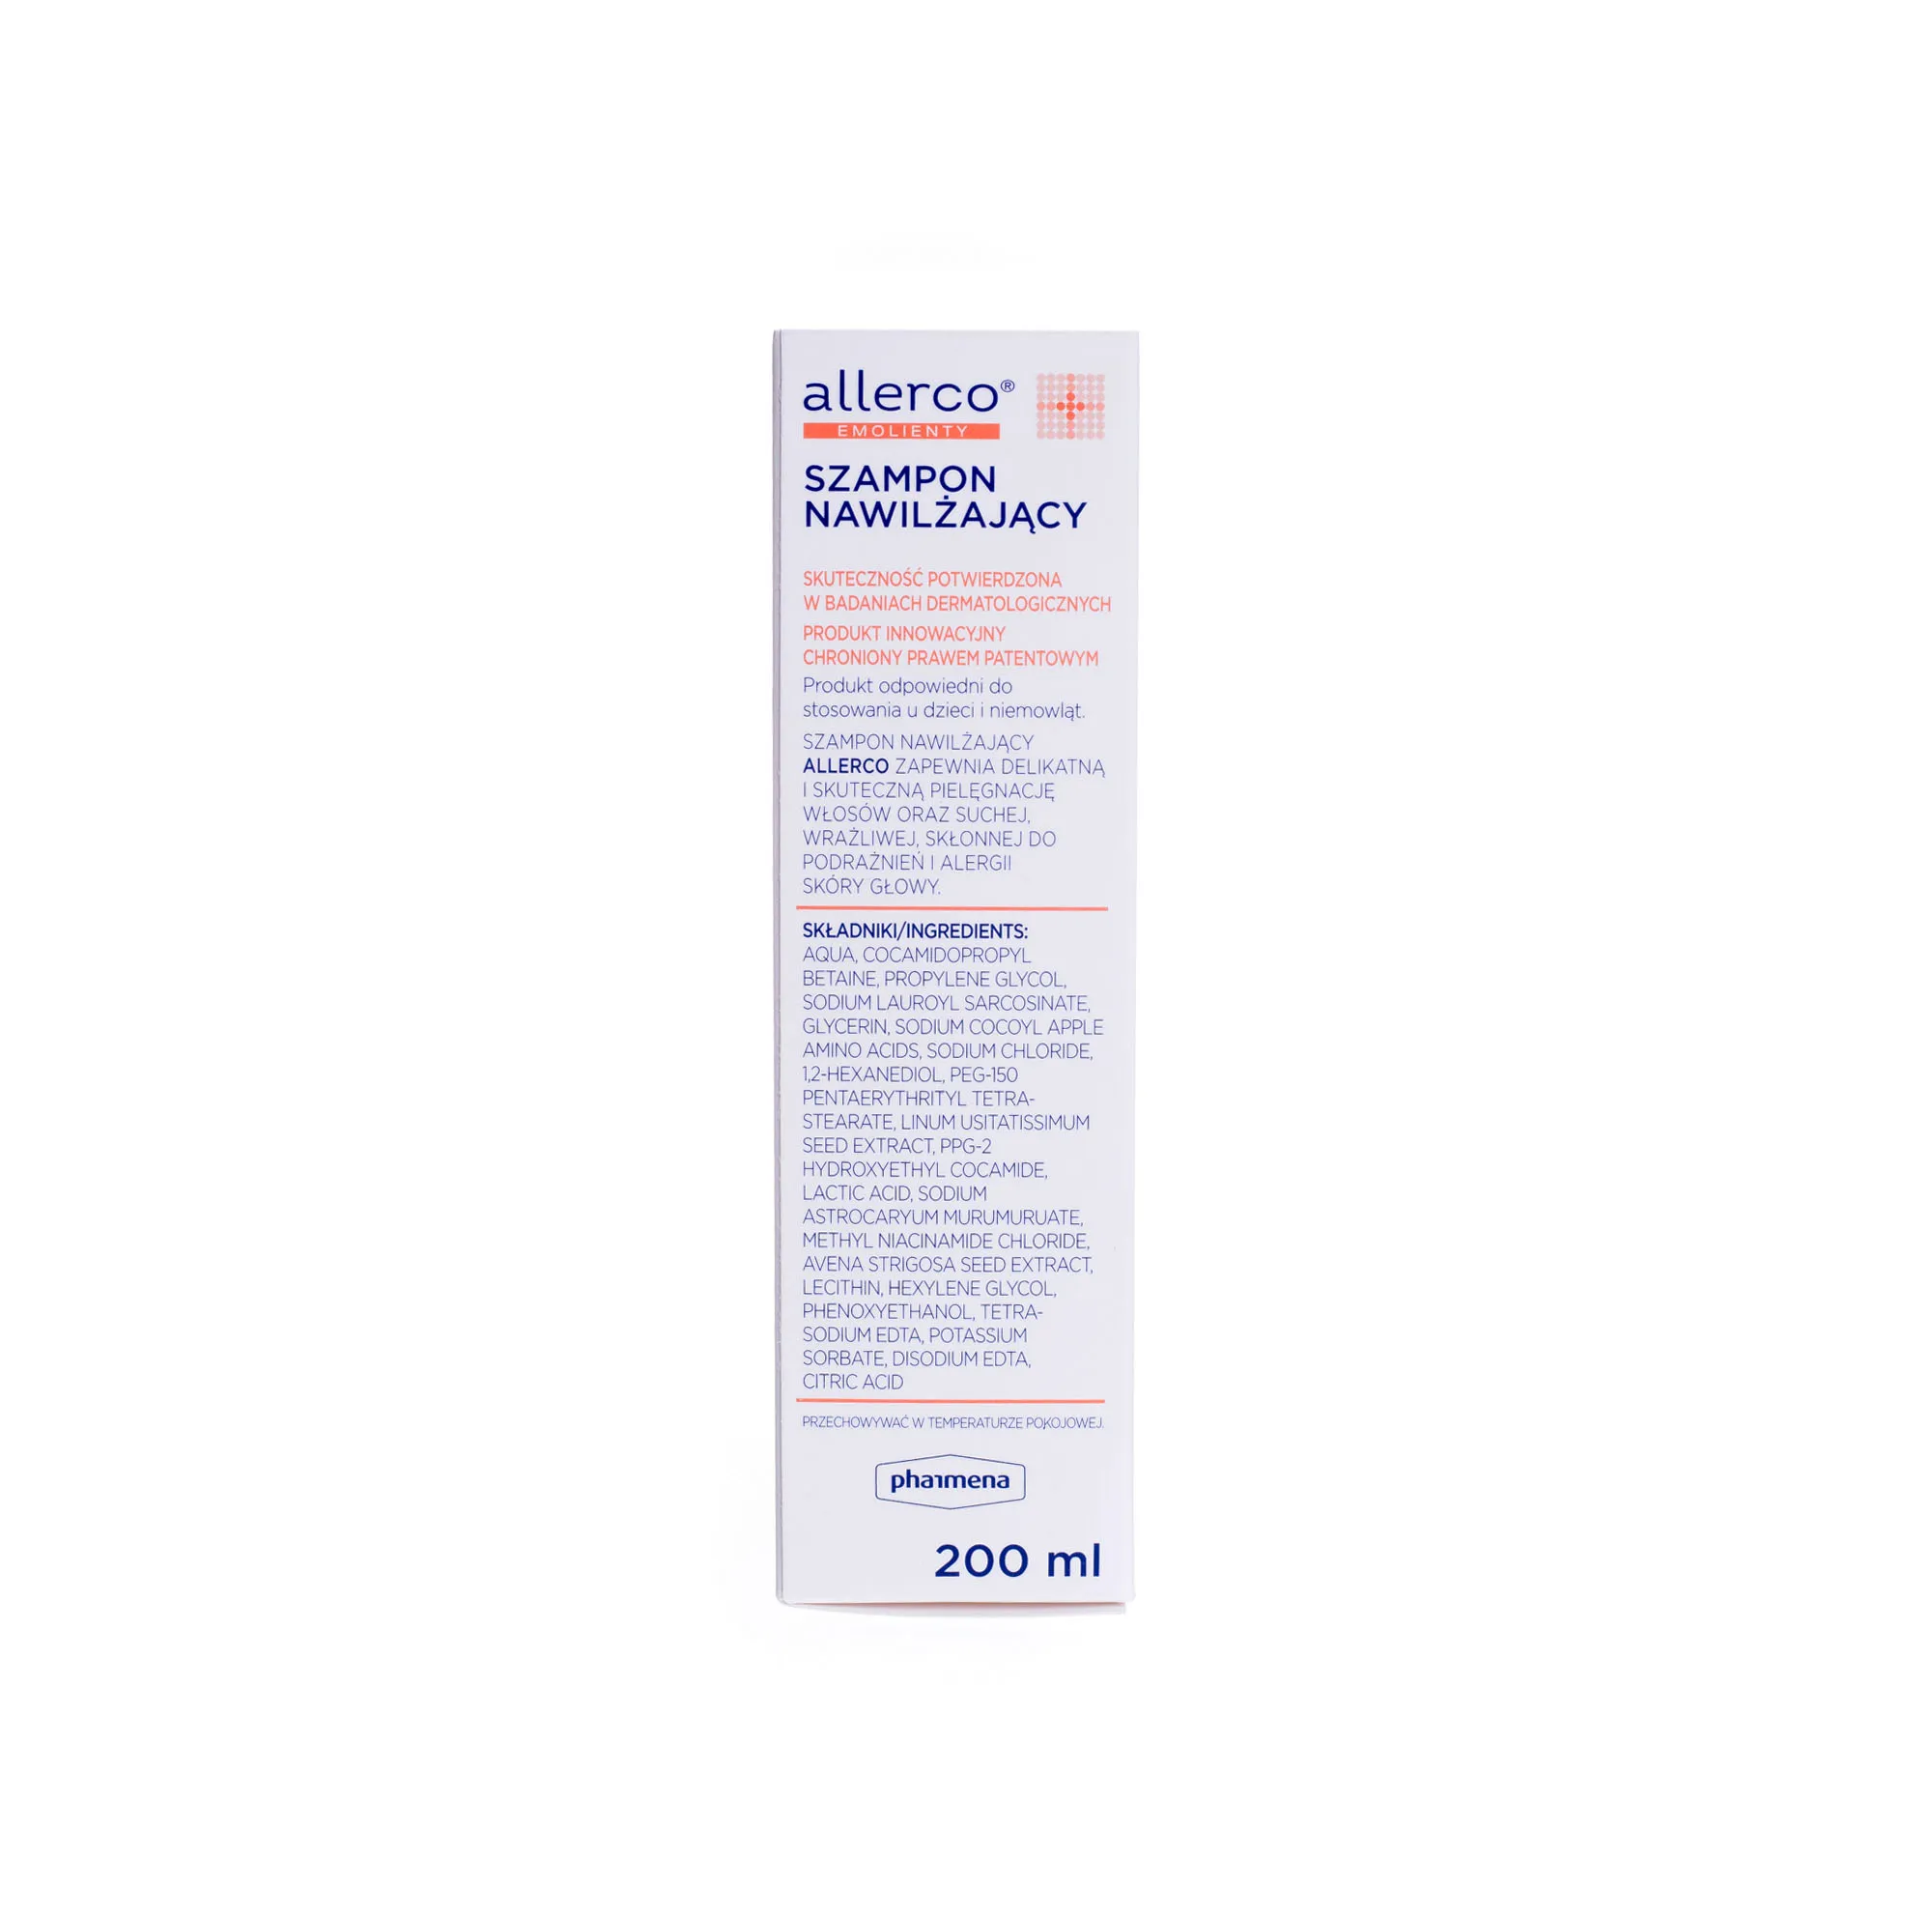 Allerco, szampon nawilżający, 200 ml 